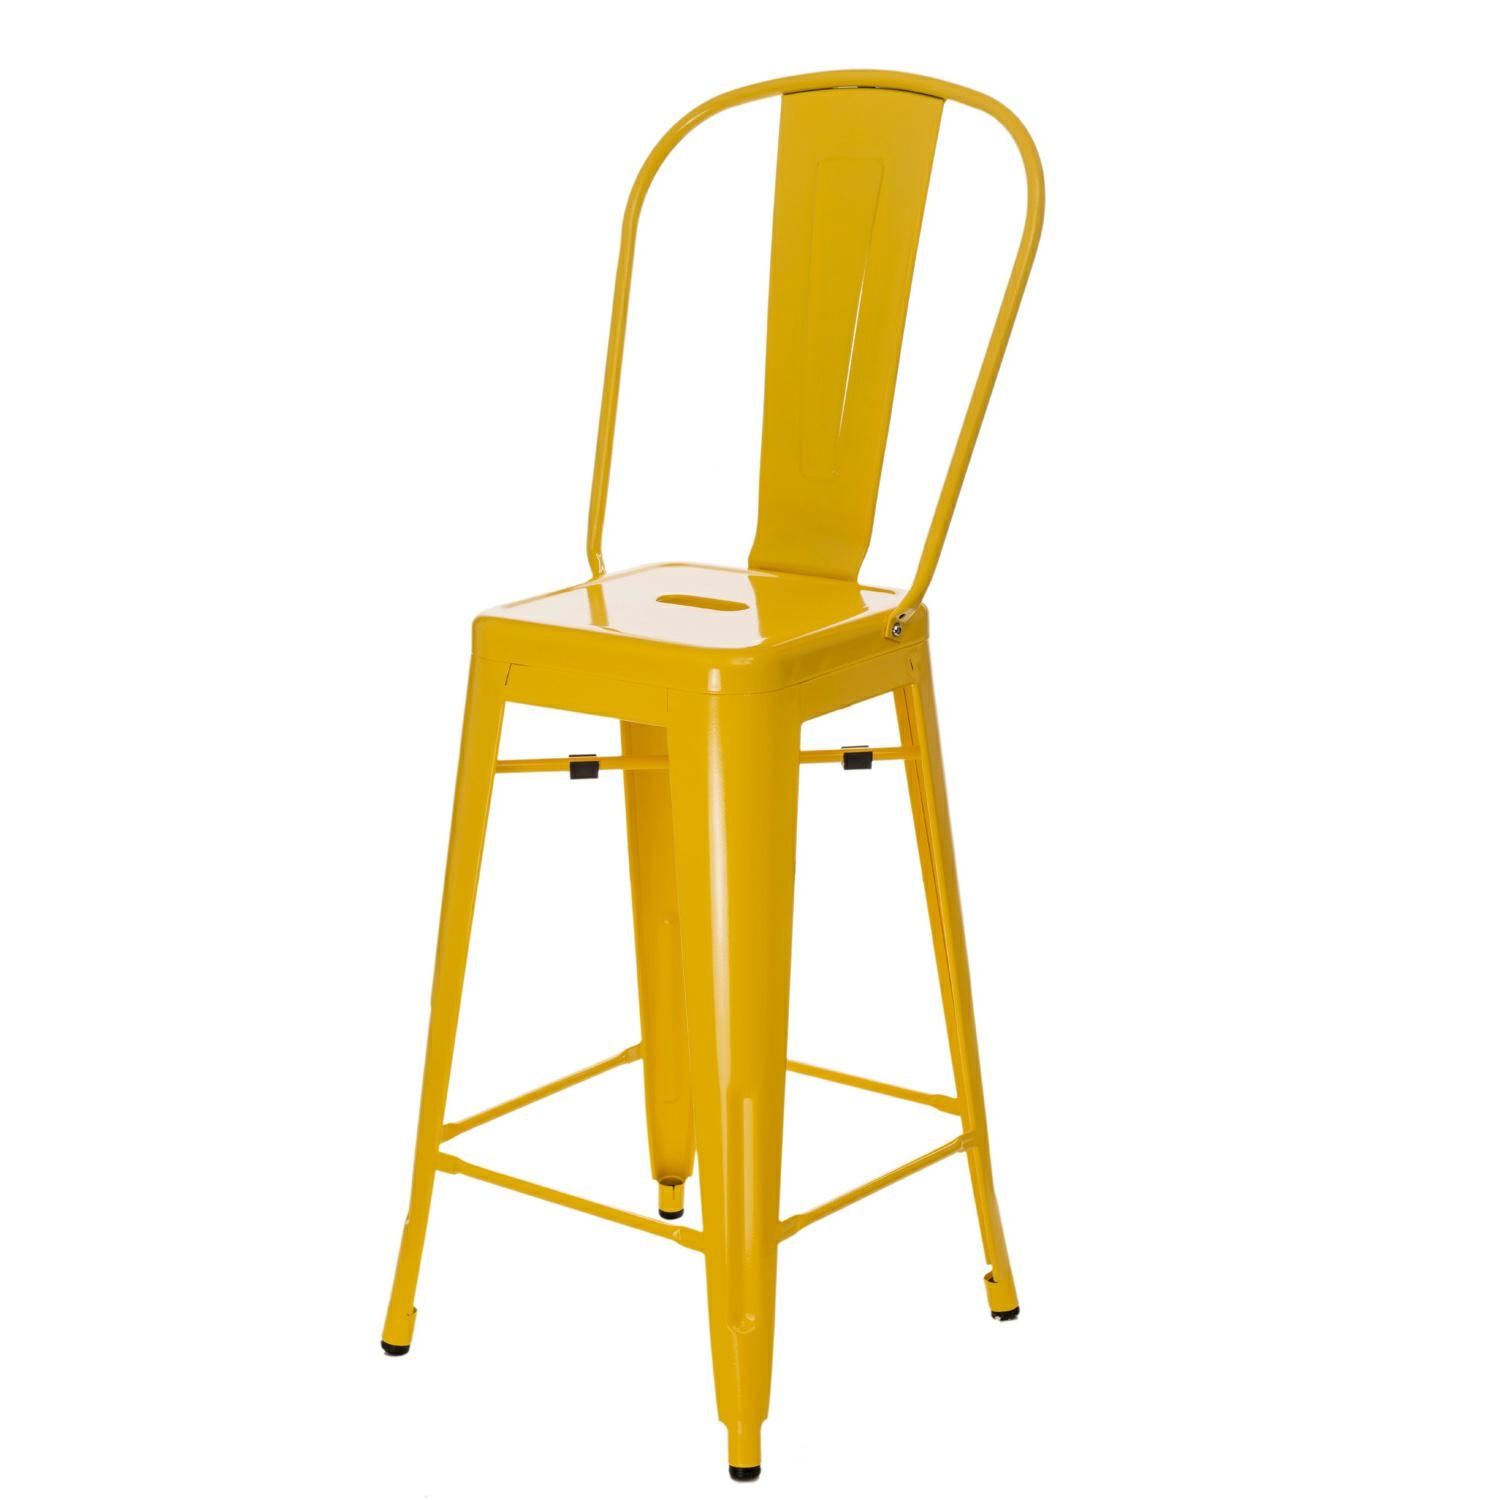  Barová židle PARIS BACK žlutá inspirovaná Tolix - Mobler.cz